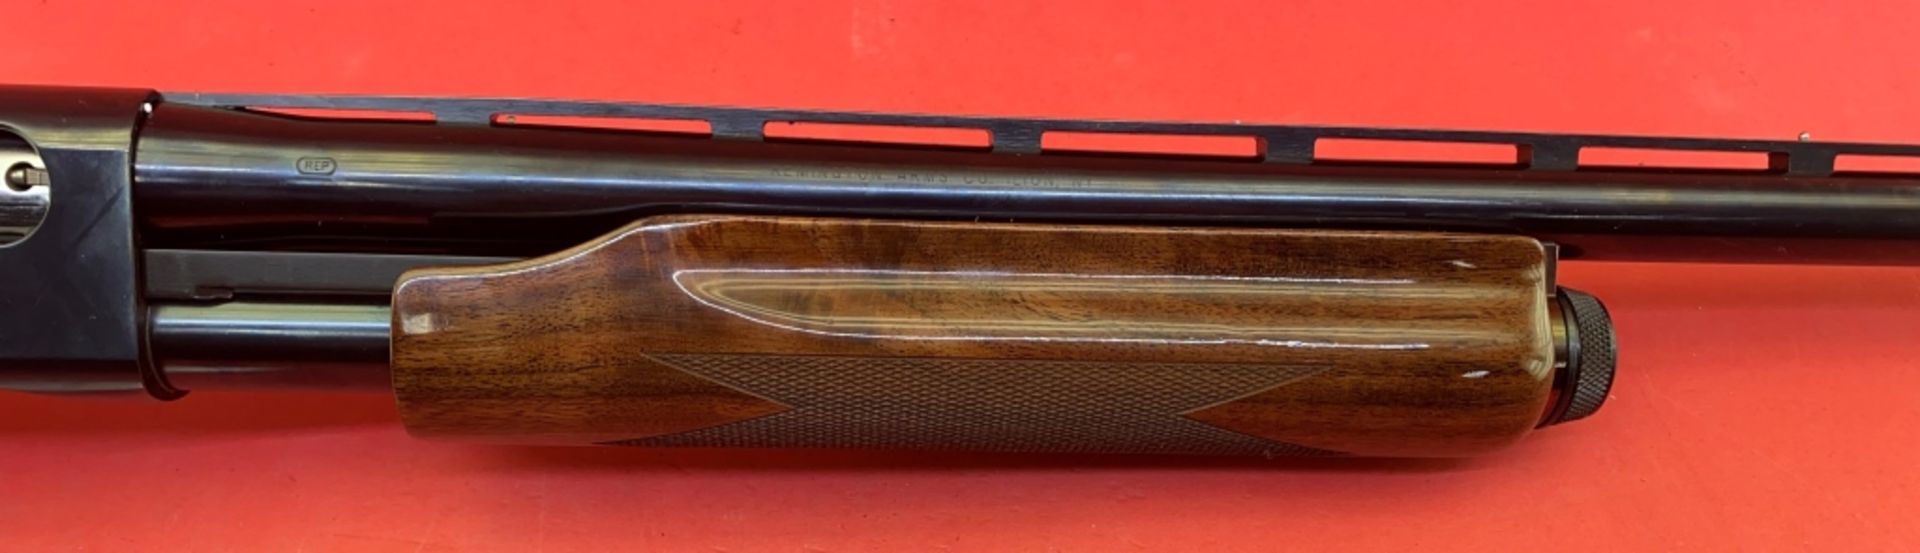 Remington 870 16 ga Shotgun - Image 5 of 13